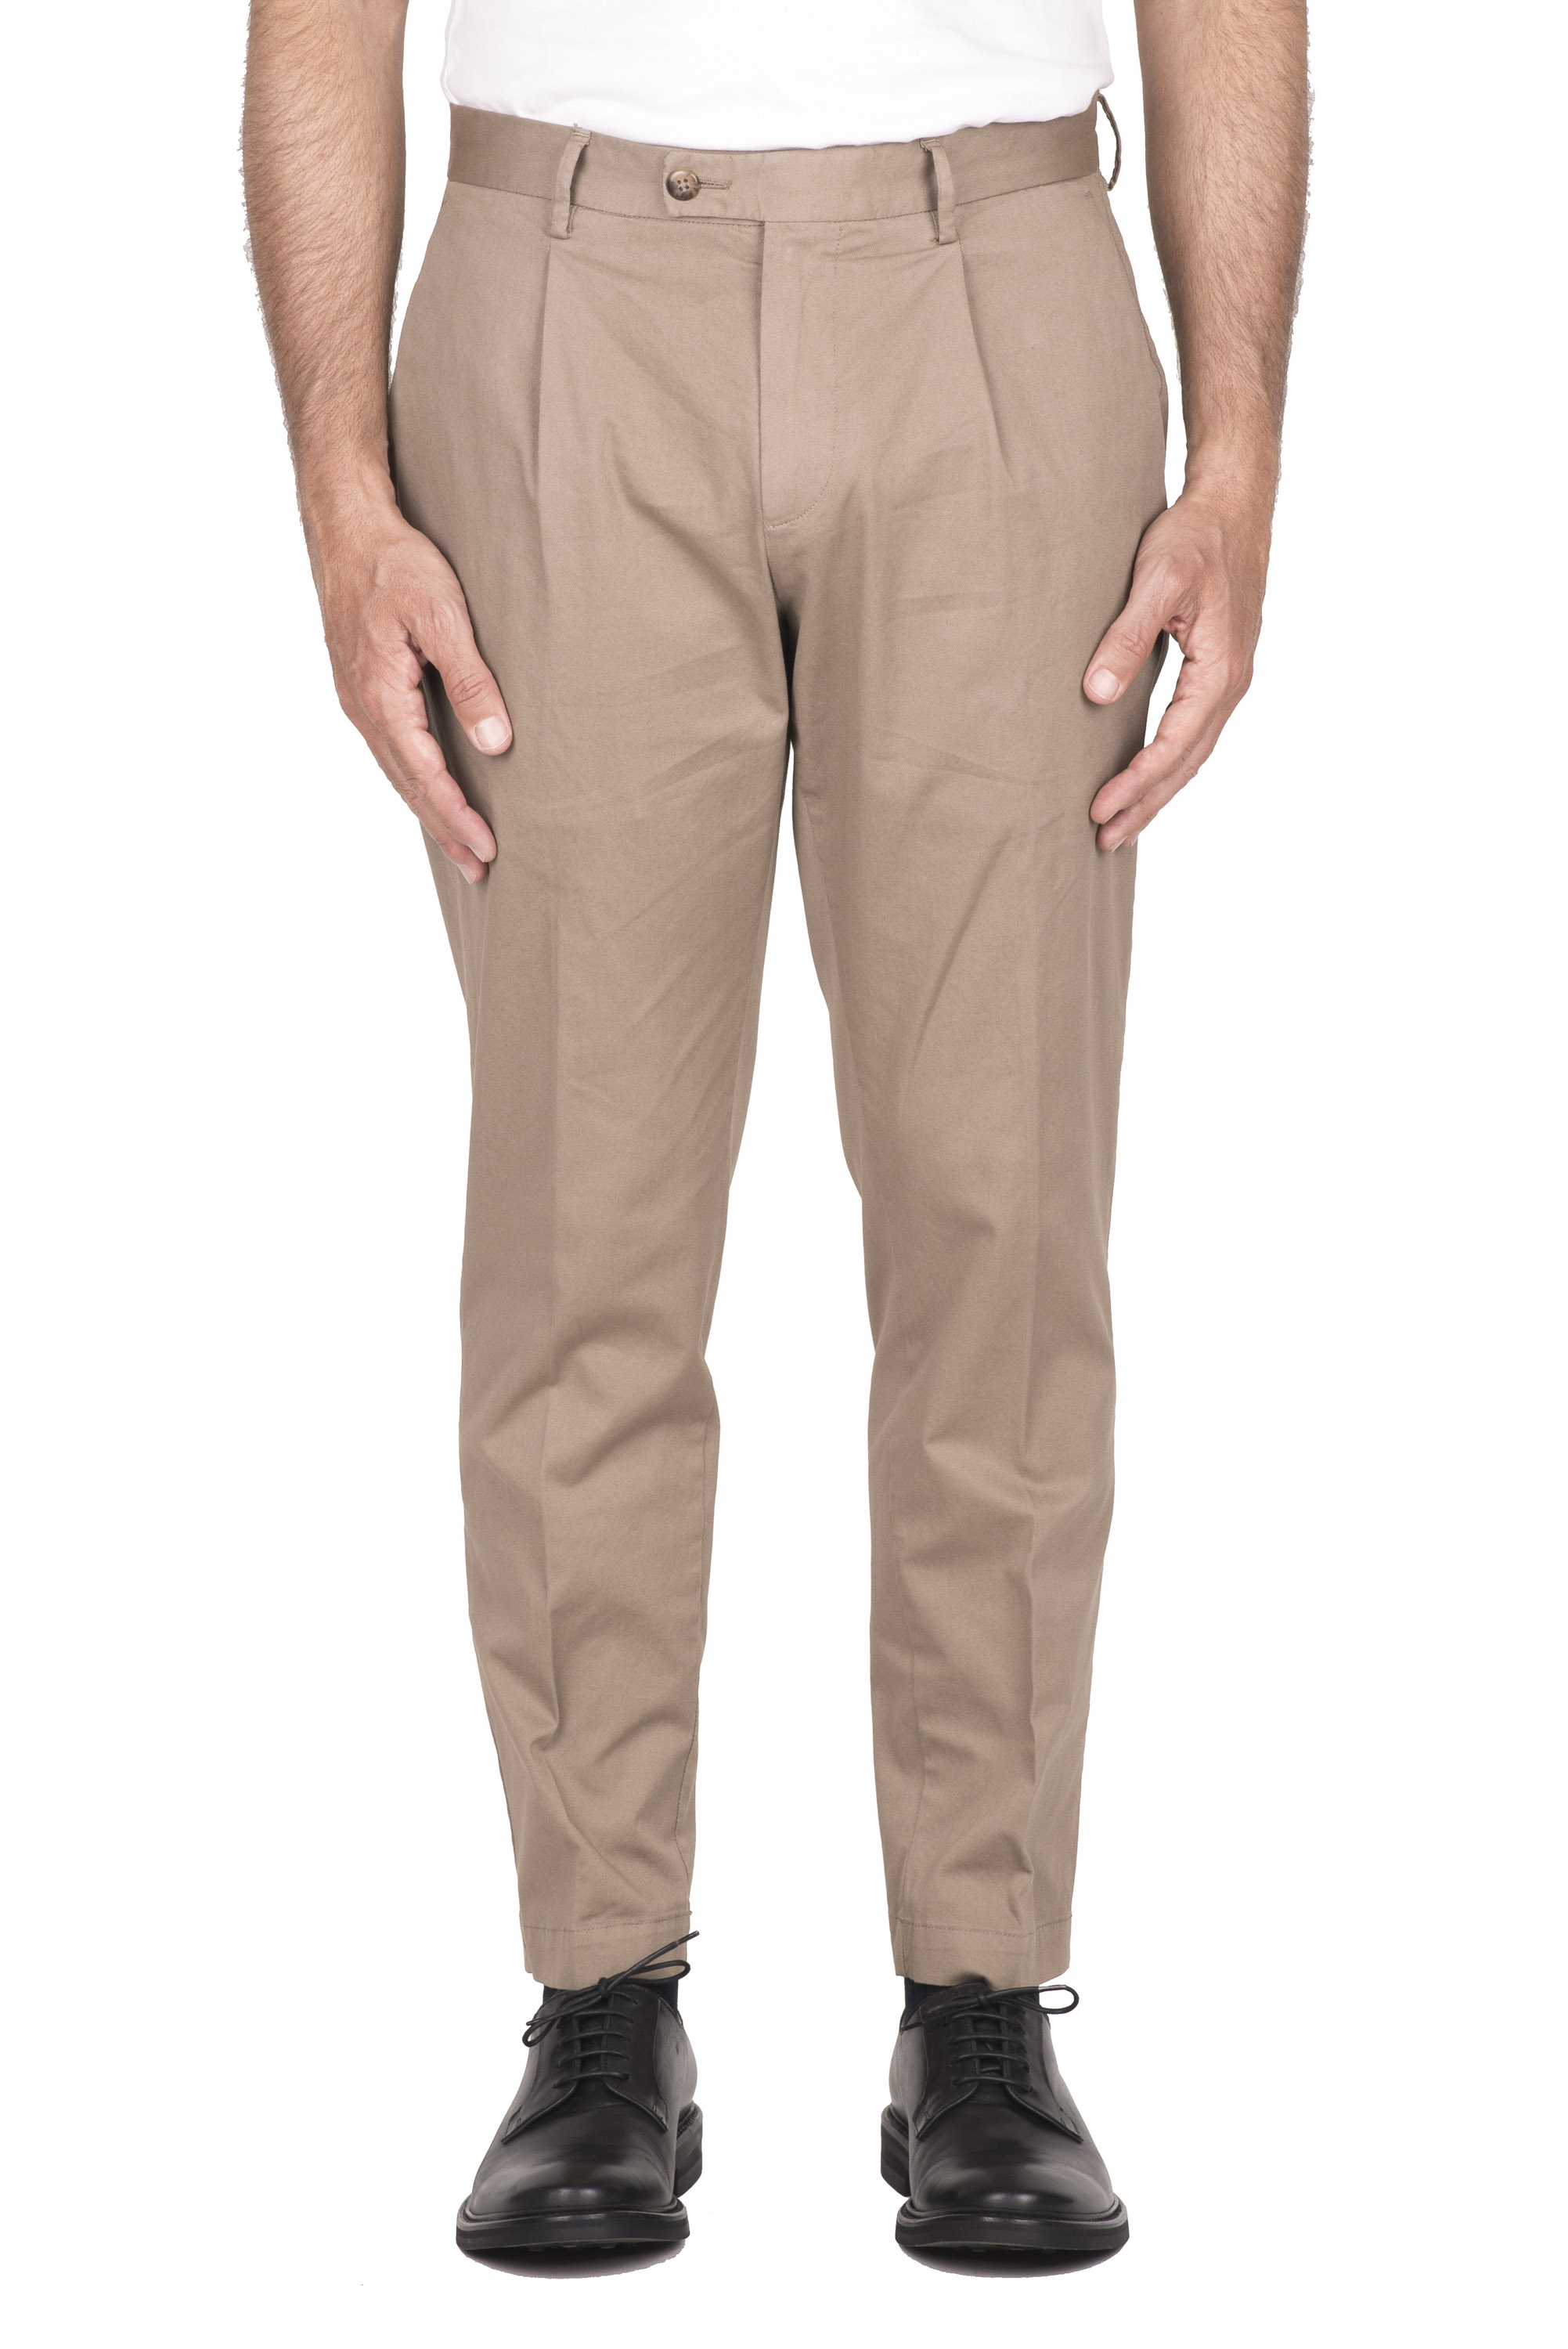 SBU 04604_23AW Pantalon classique en coton stretch beige avec pinces 01